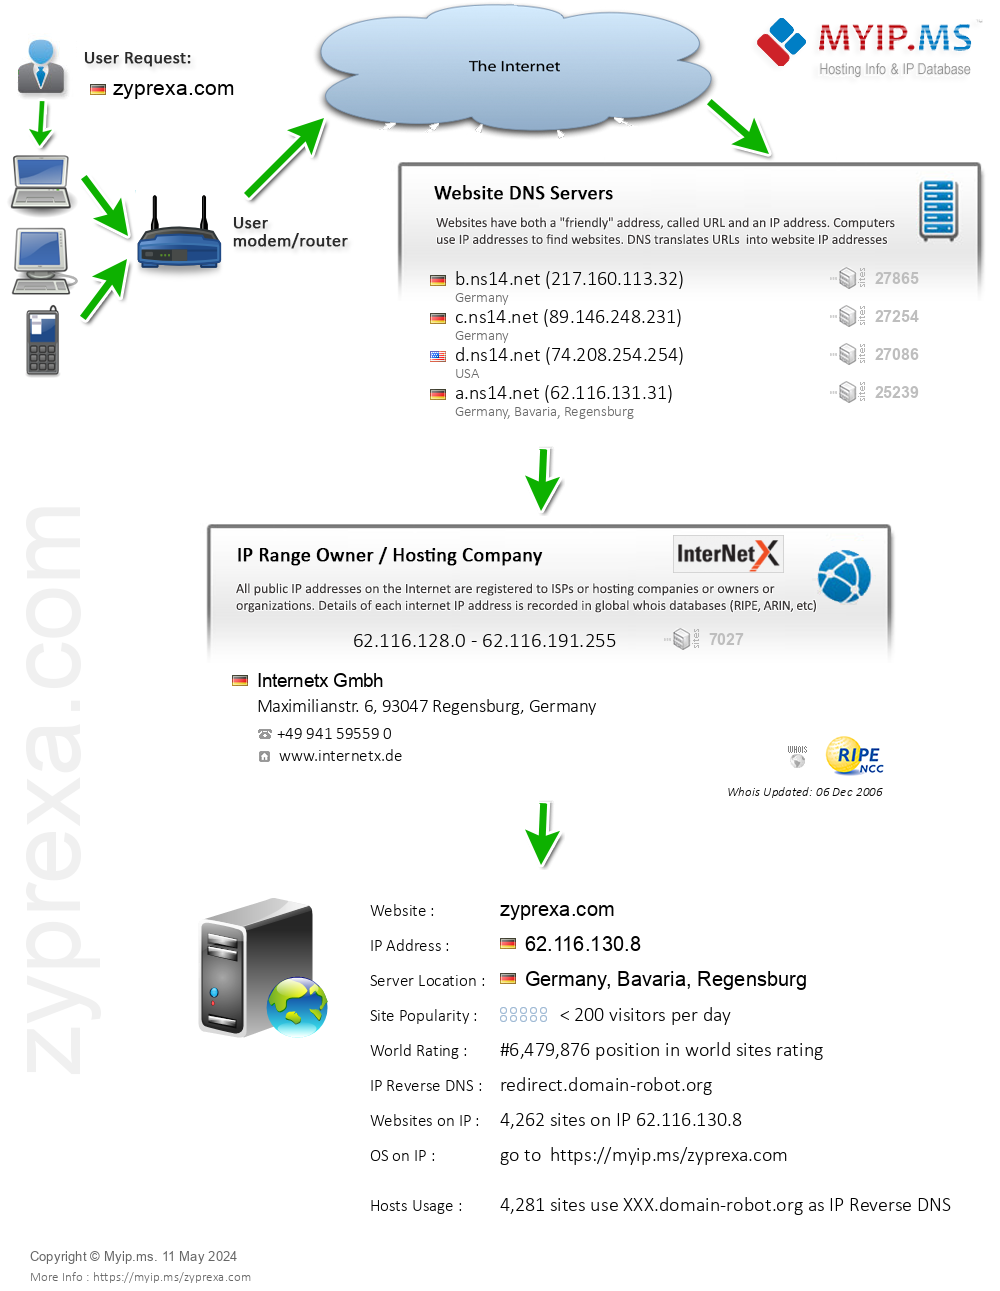 Zyprexa.com - Website Hosting Visual IP Diagram